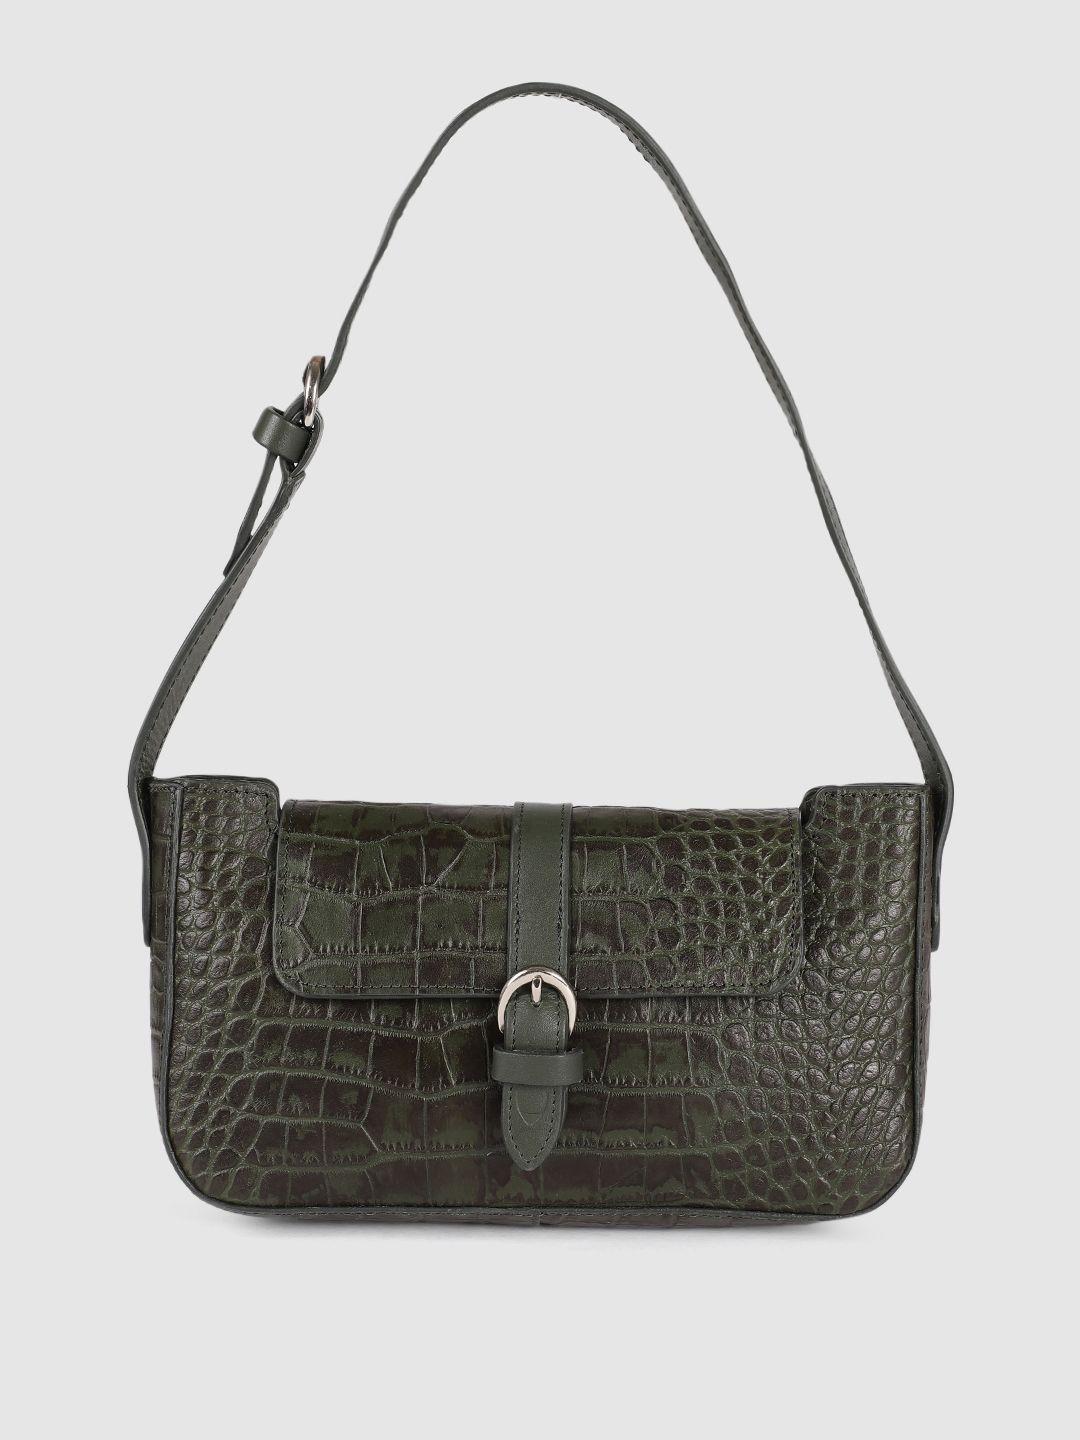 hidesign olive green animal textured leather structured shoulder bag